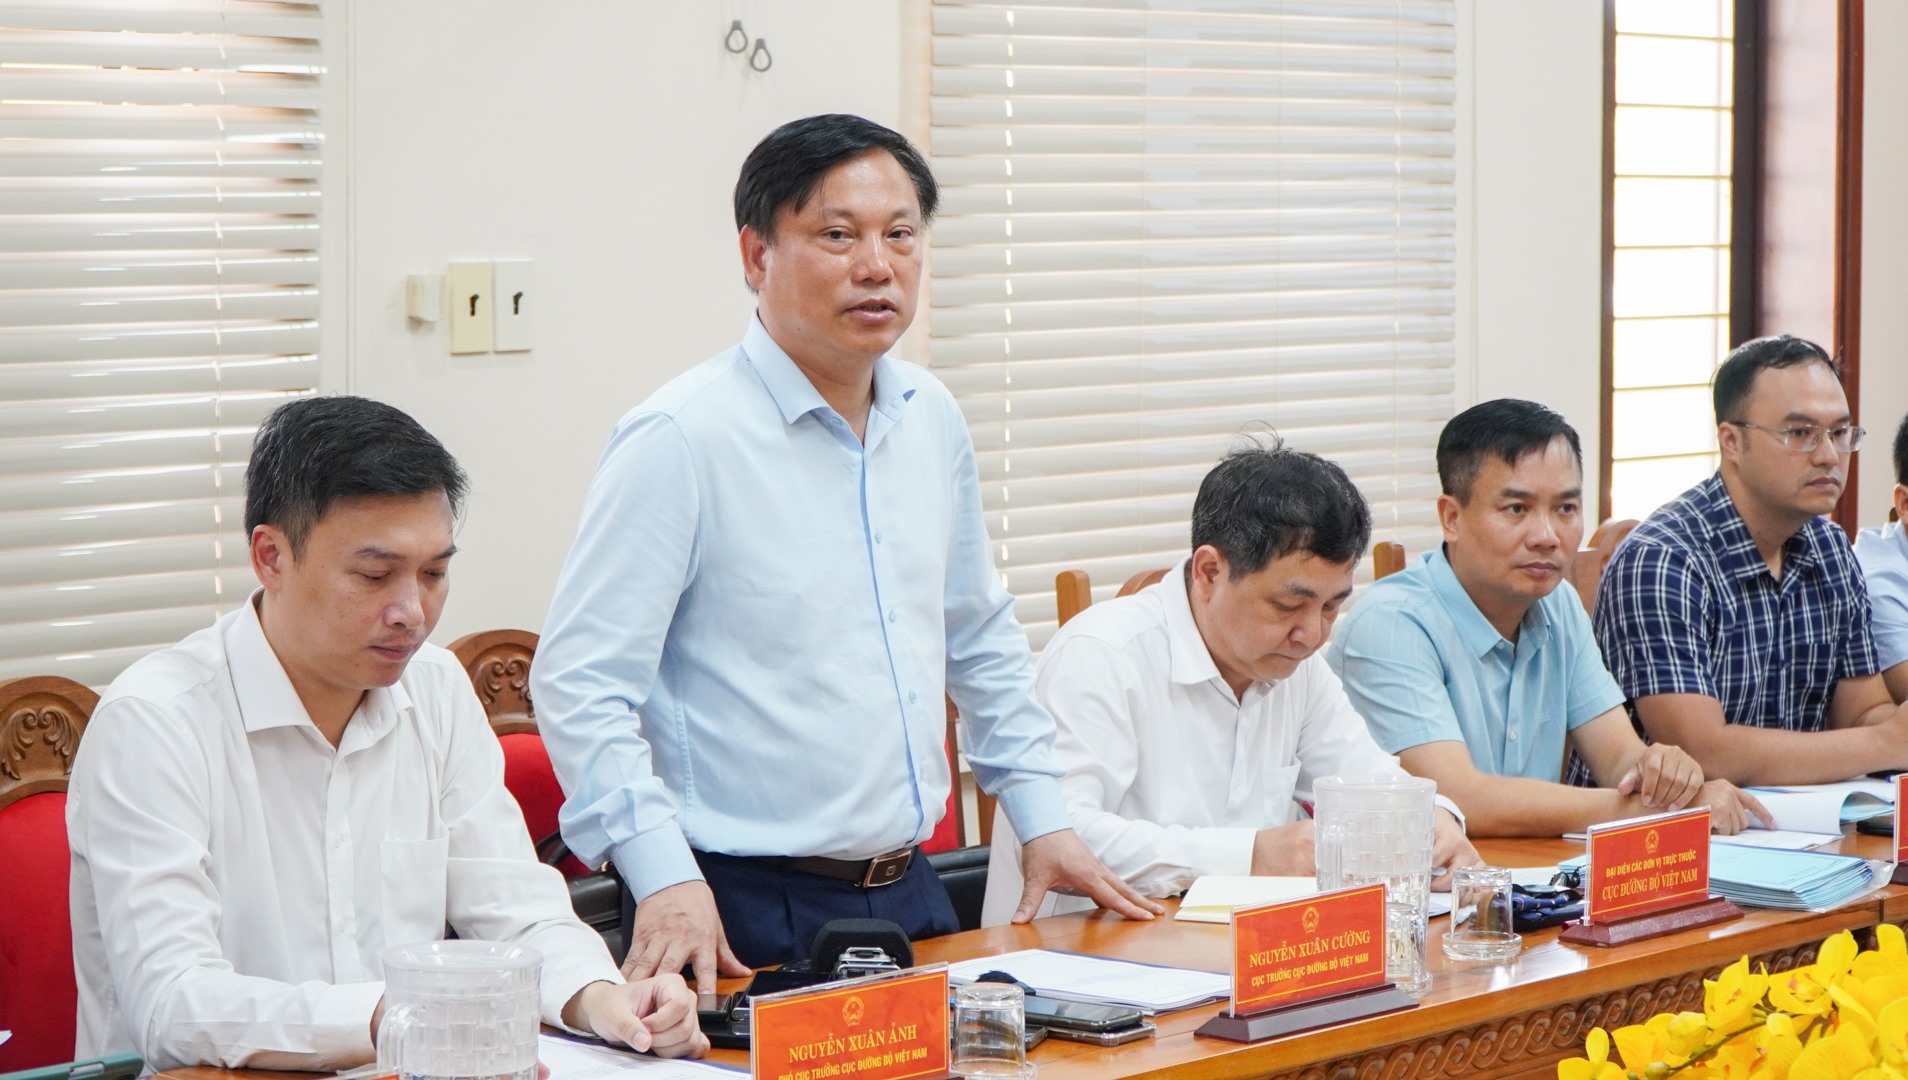 Cục trưởng Cục Đường bộ Việt Nam Nguyễn Xuân Cuờng khẳng định, trước mắt việc phân luồng như hiện nay được coi là phương án tối ưu nhất - Ảnh: Lê Trường